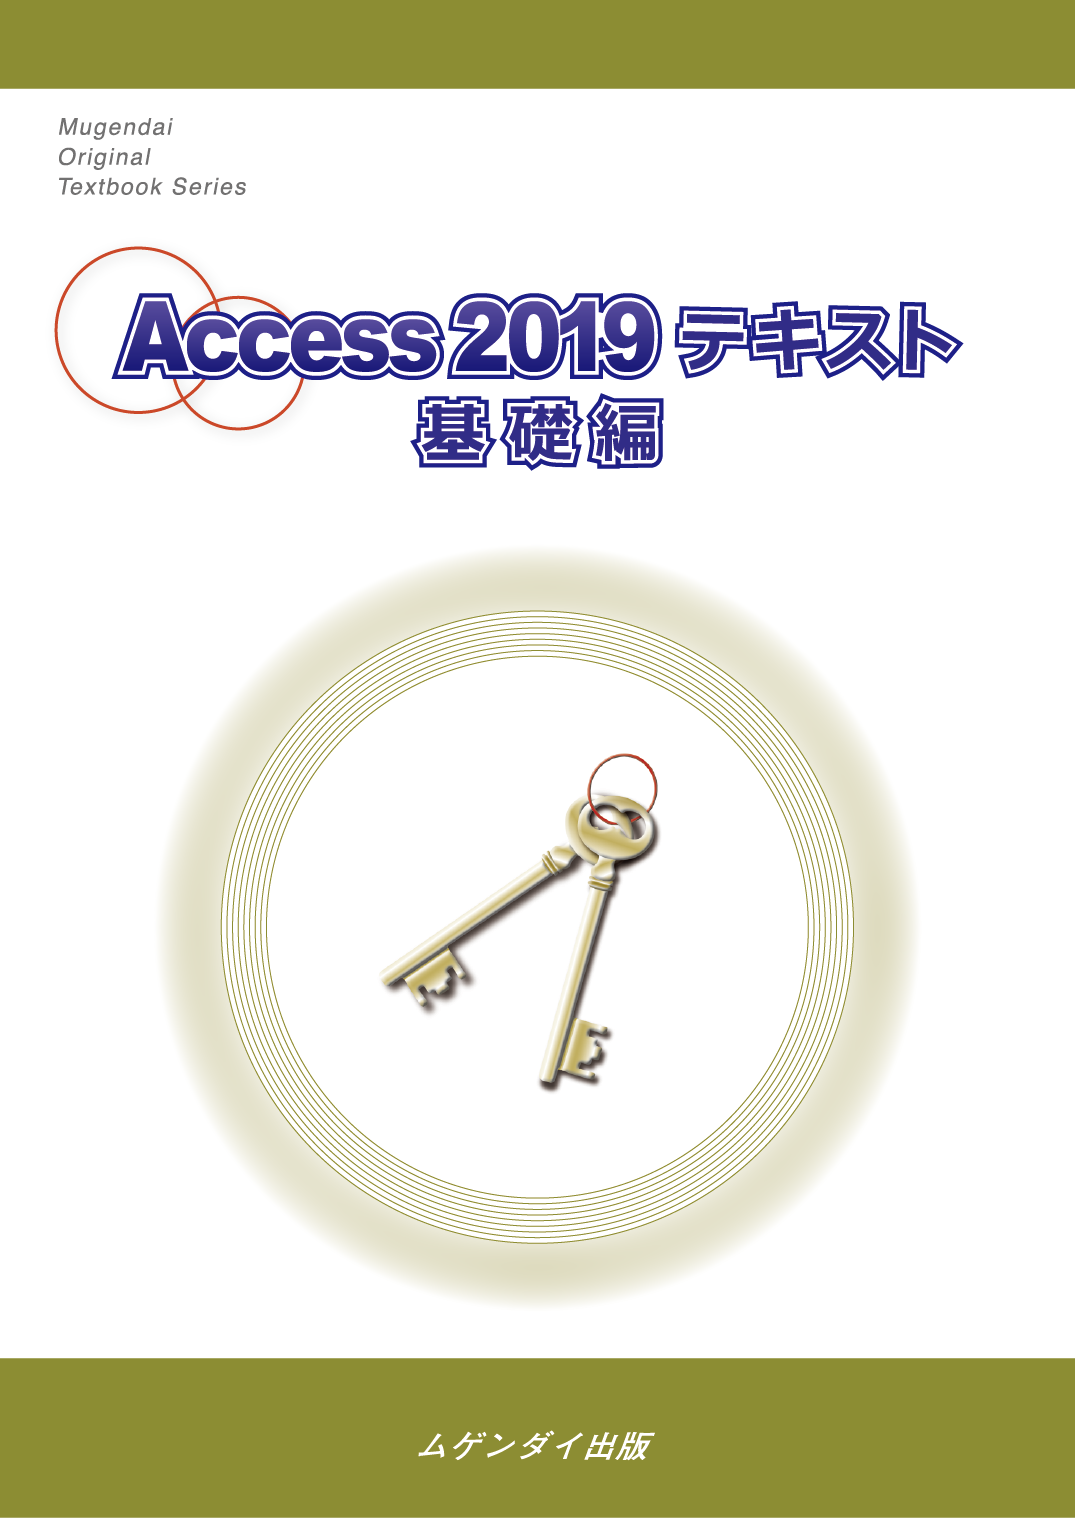 Access 2019 eLXg@b